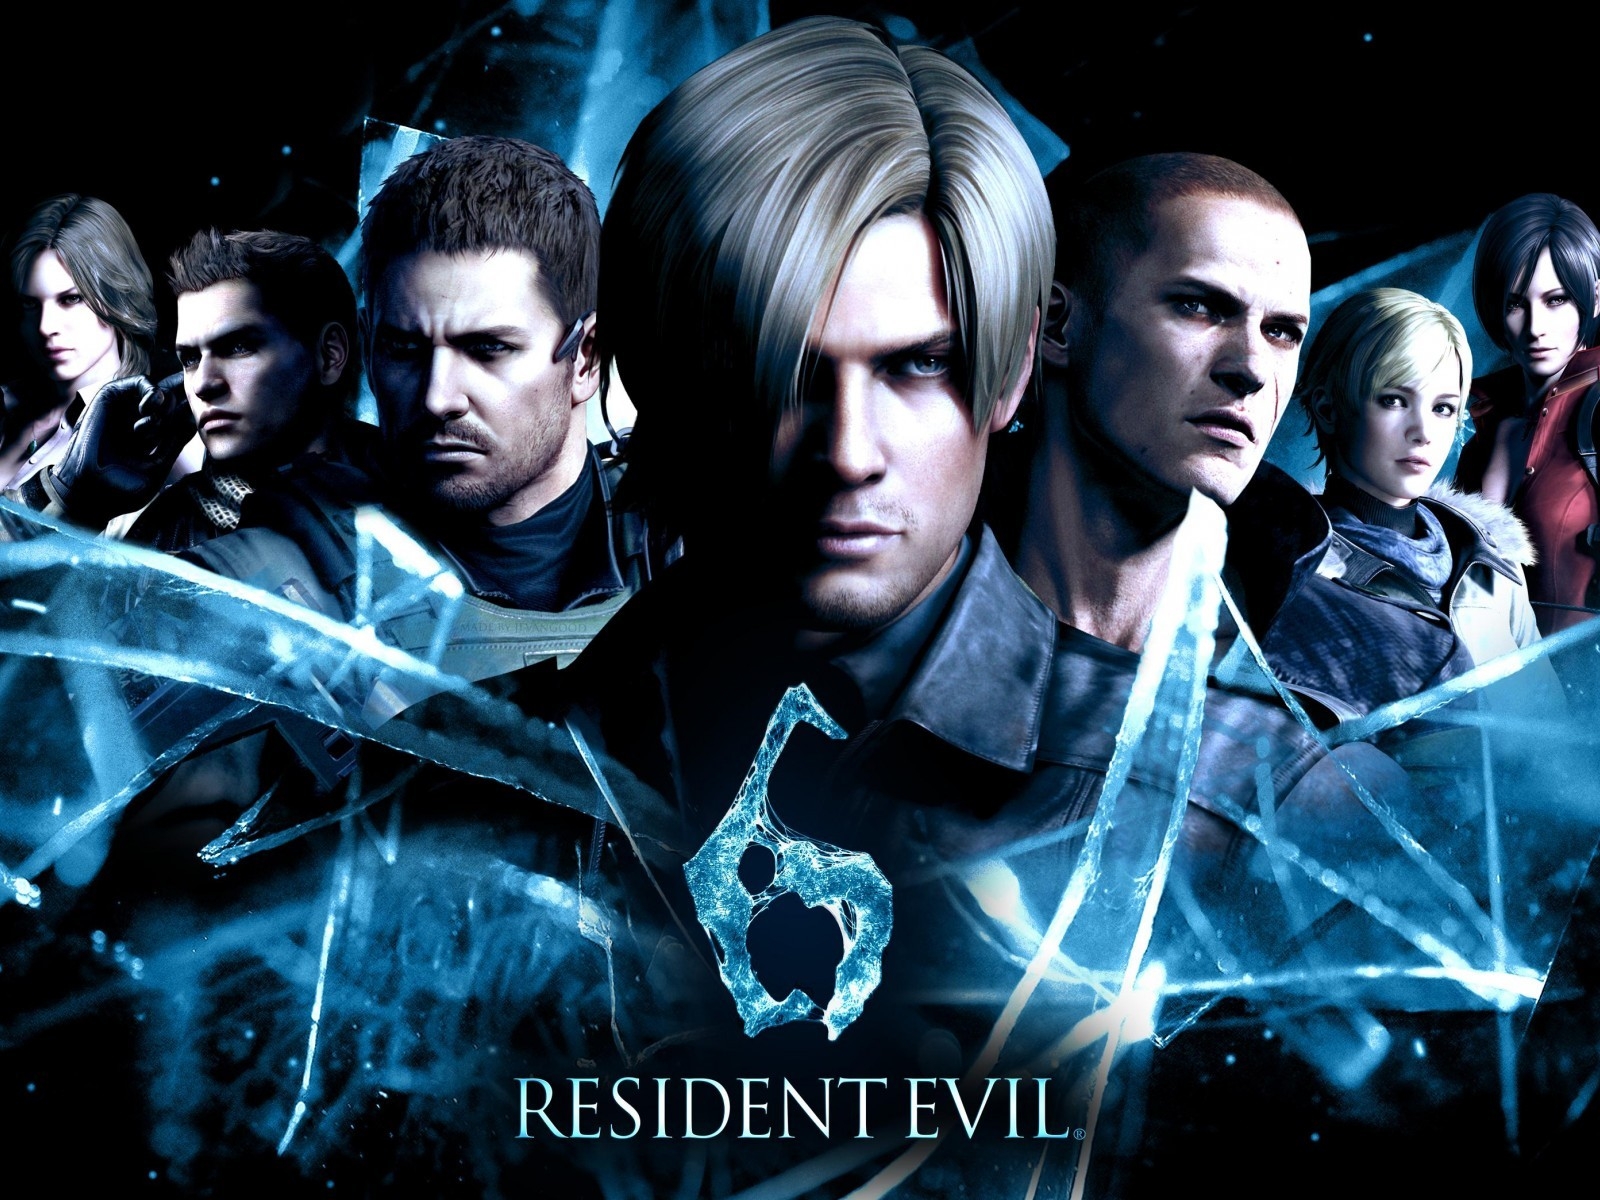 Resident Evil 6 2014 for 1600 x 1200 resolution